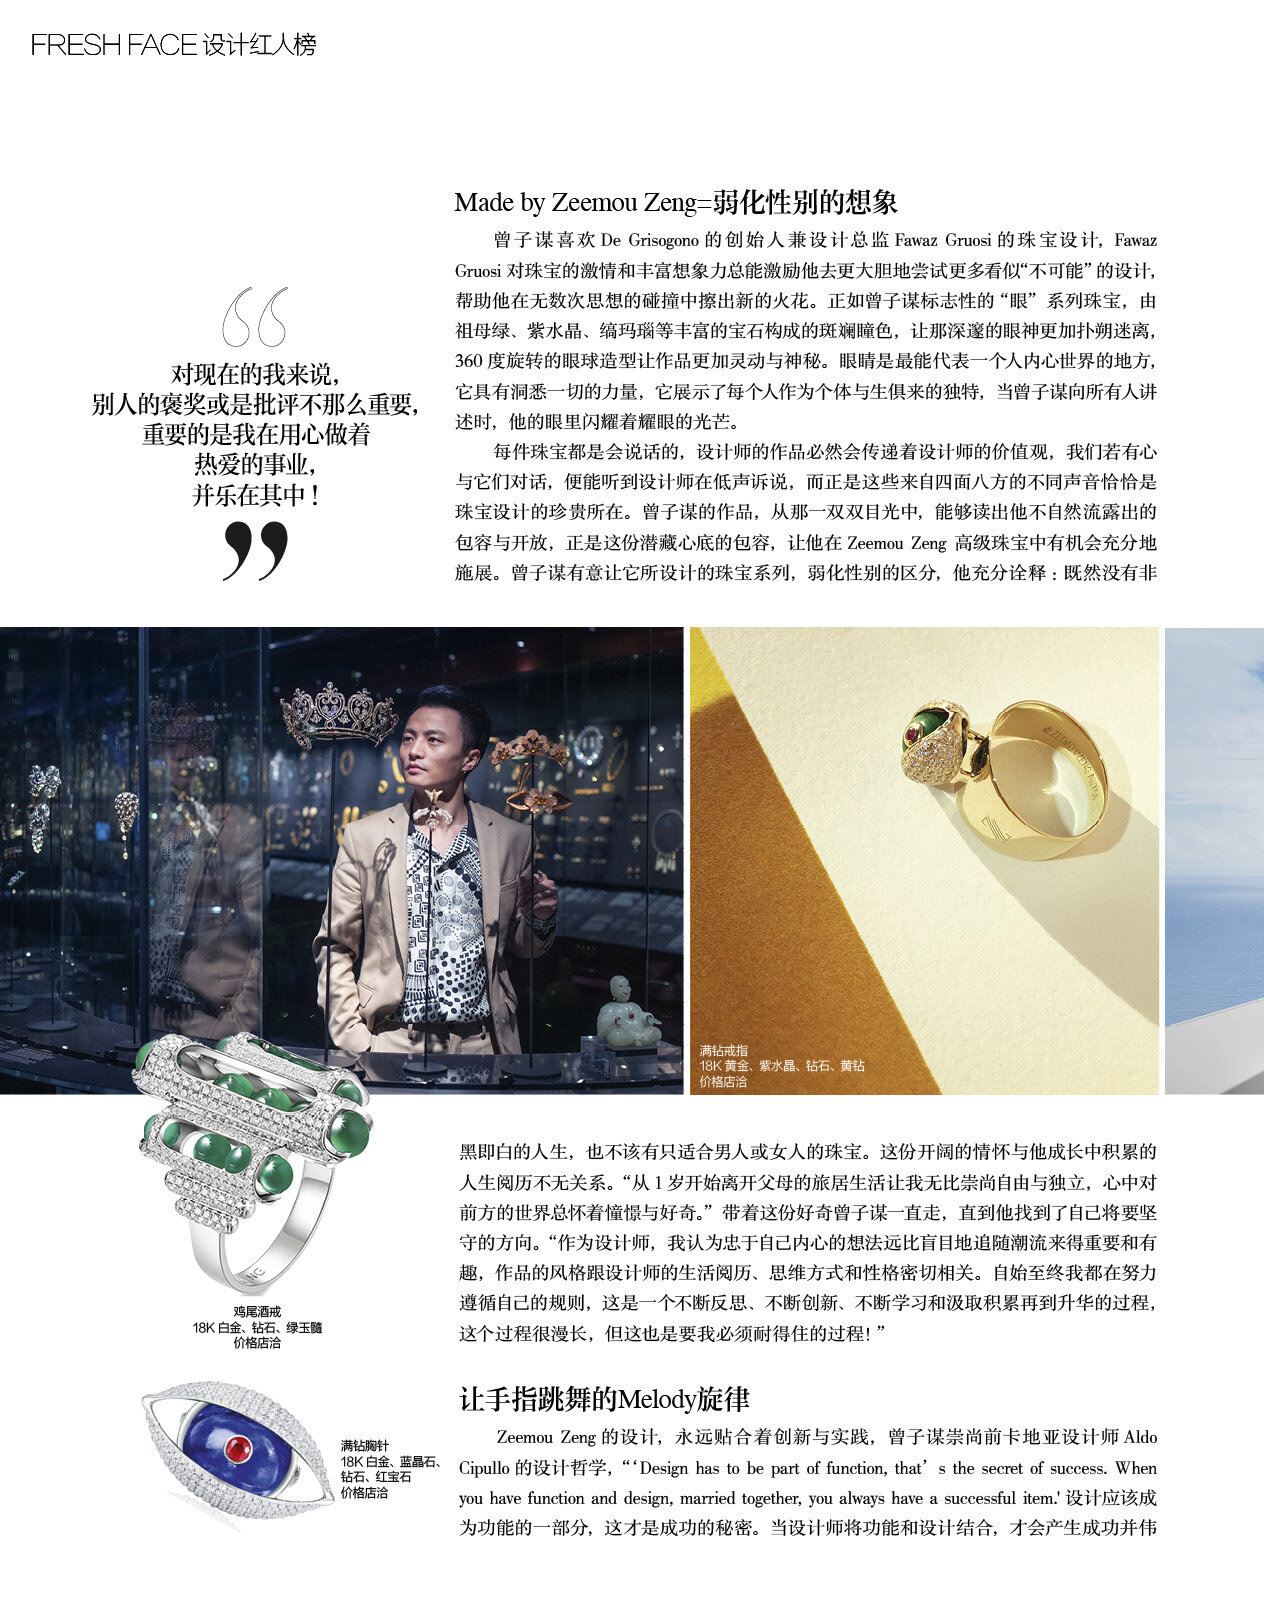 Zeemou Zeng interview with Harper’s Bazaar Jewellery - page 3